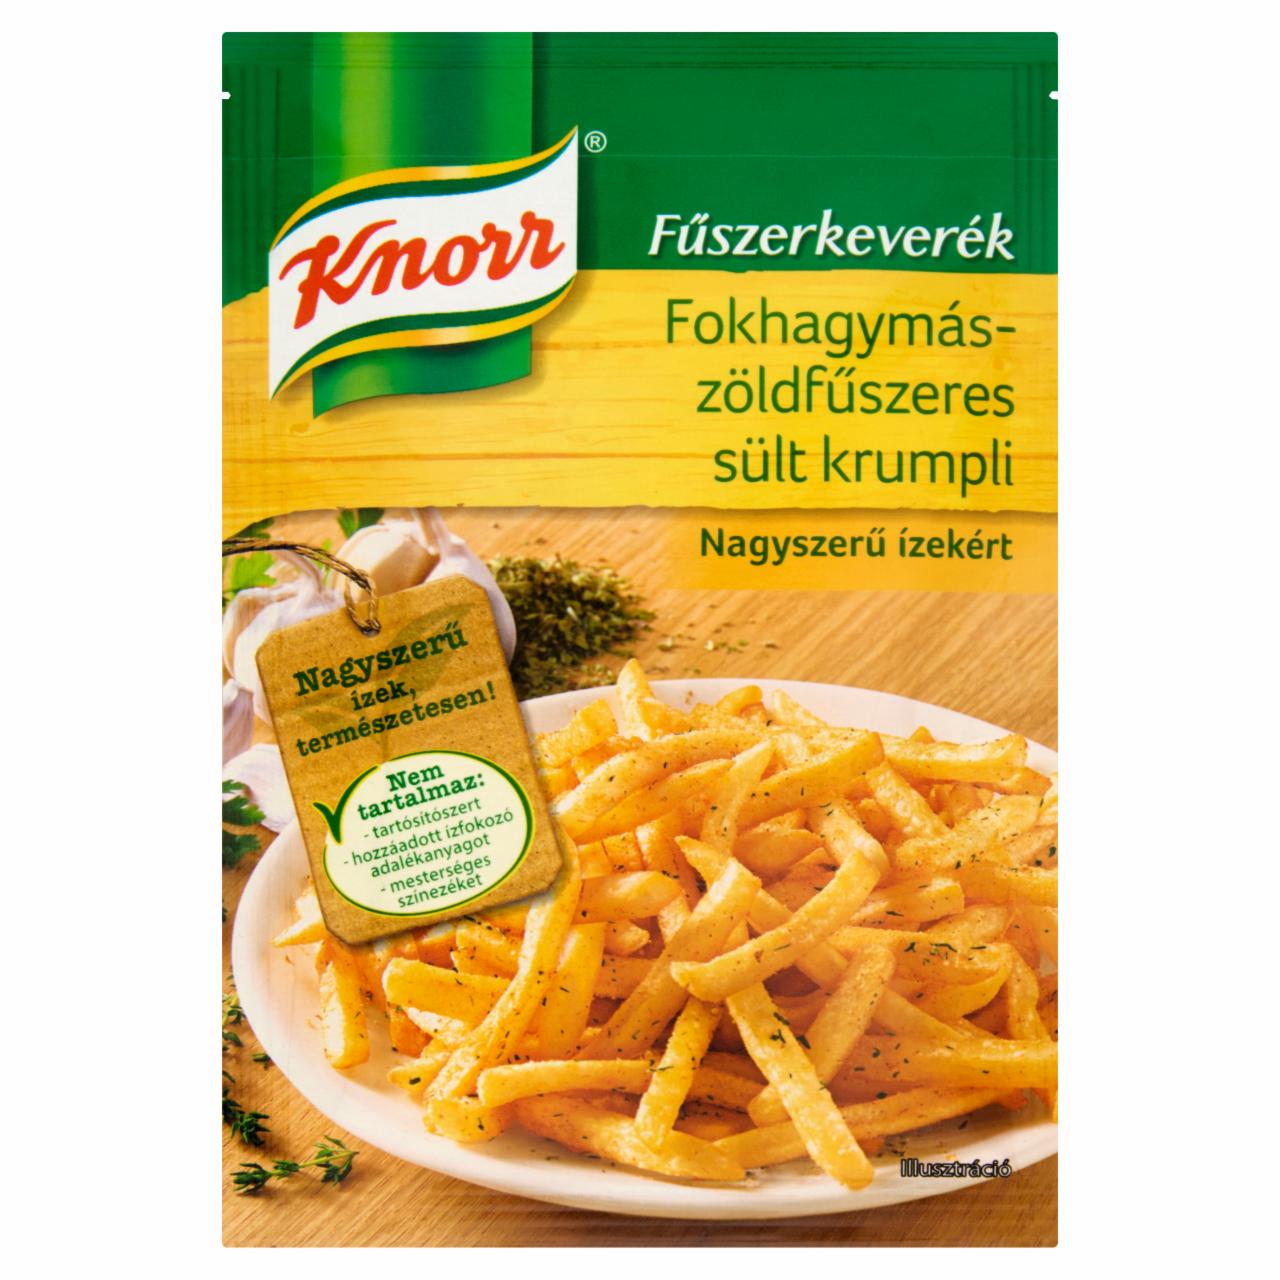 Képek - Knorr fokhagymás-zöldfűszeres sült krumpli fűszerkeverék 35 g